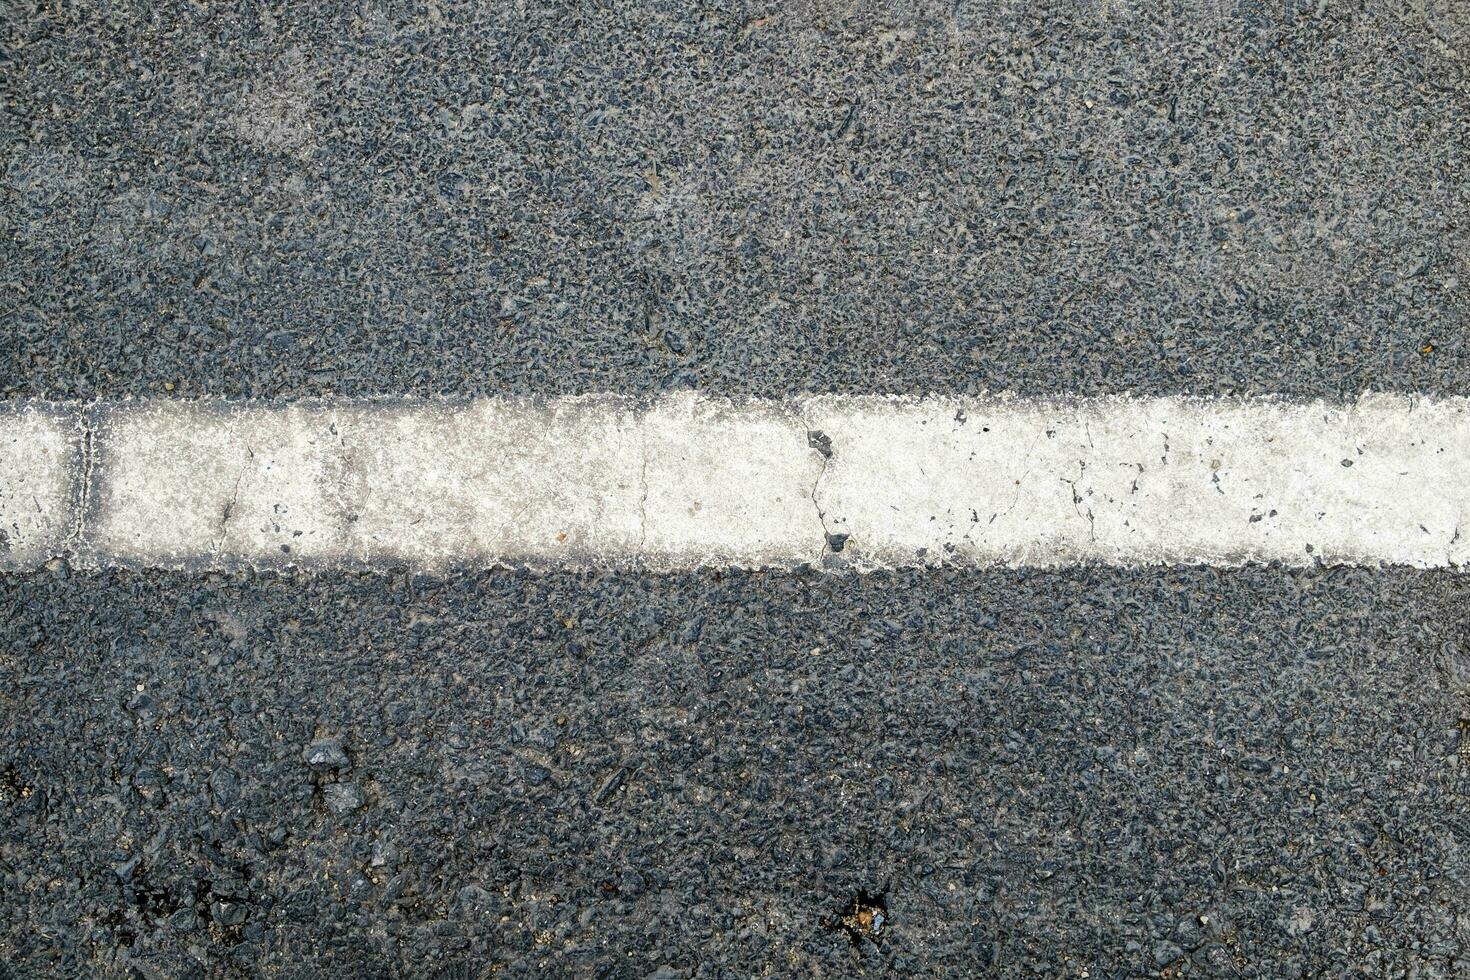 blanc ligne sur asphalte route texture photo